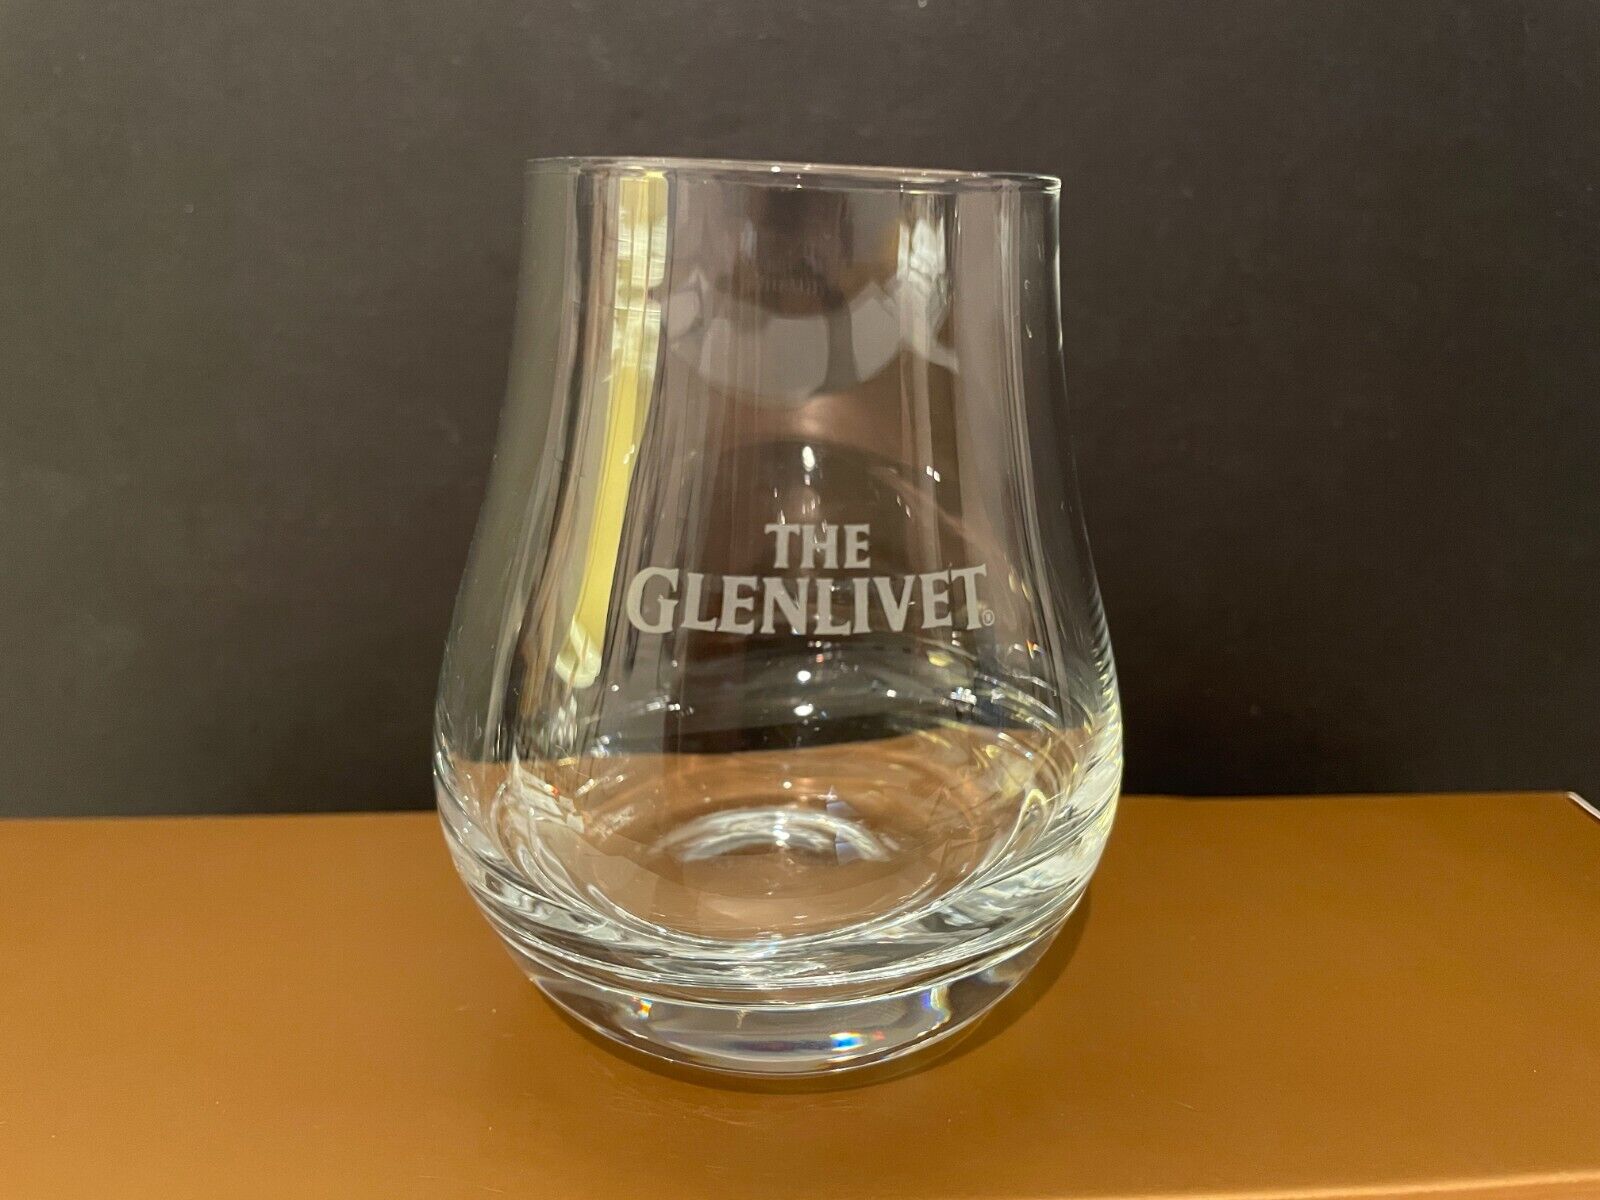 The Glenlivet Etched Scotch Whisky Tulip Snifter Taster Glass